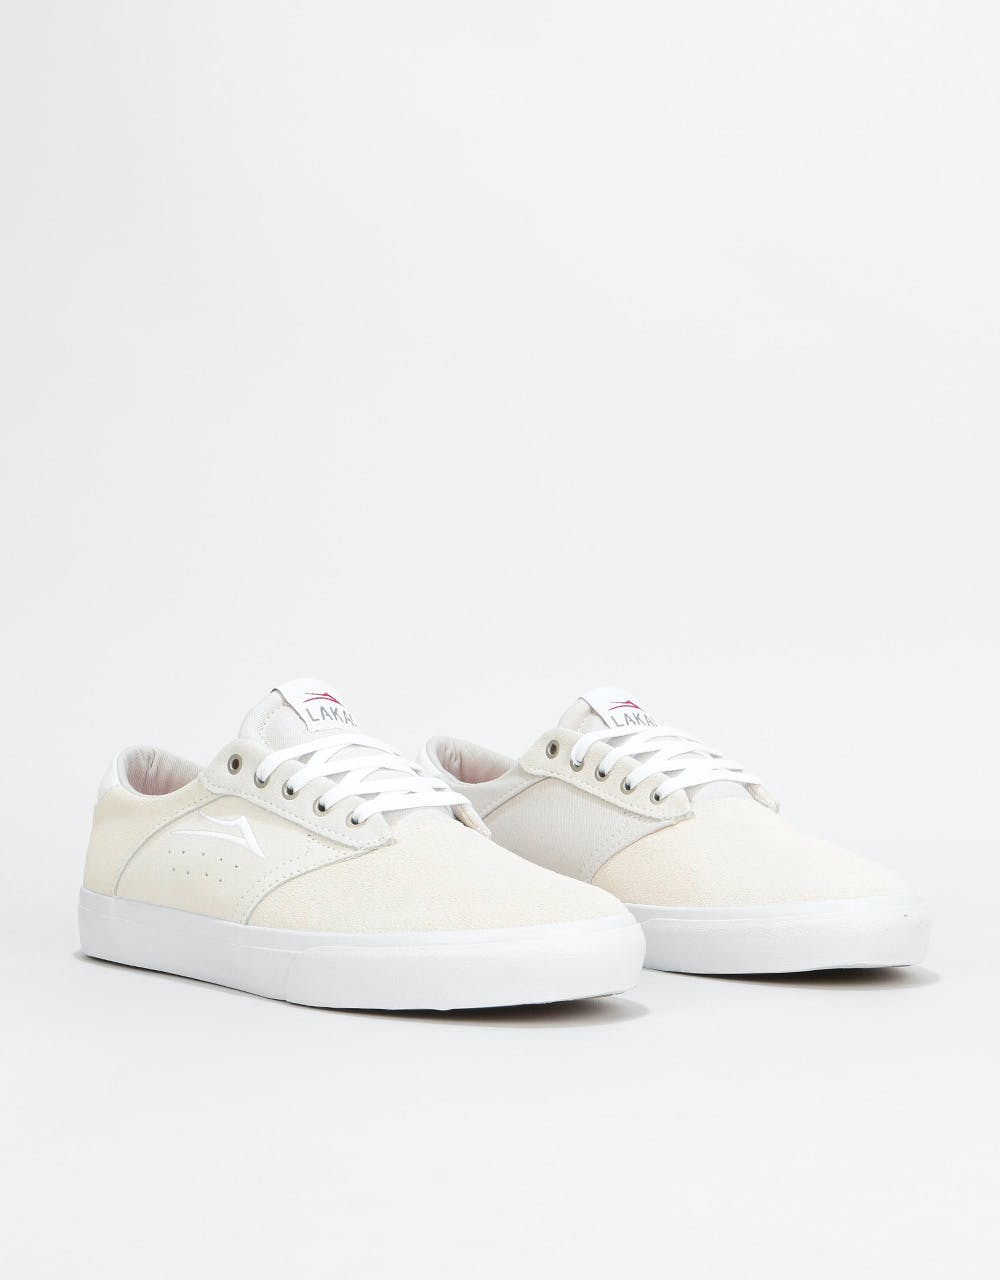 Lakai Porter Skate Shoes - White Suede